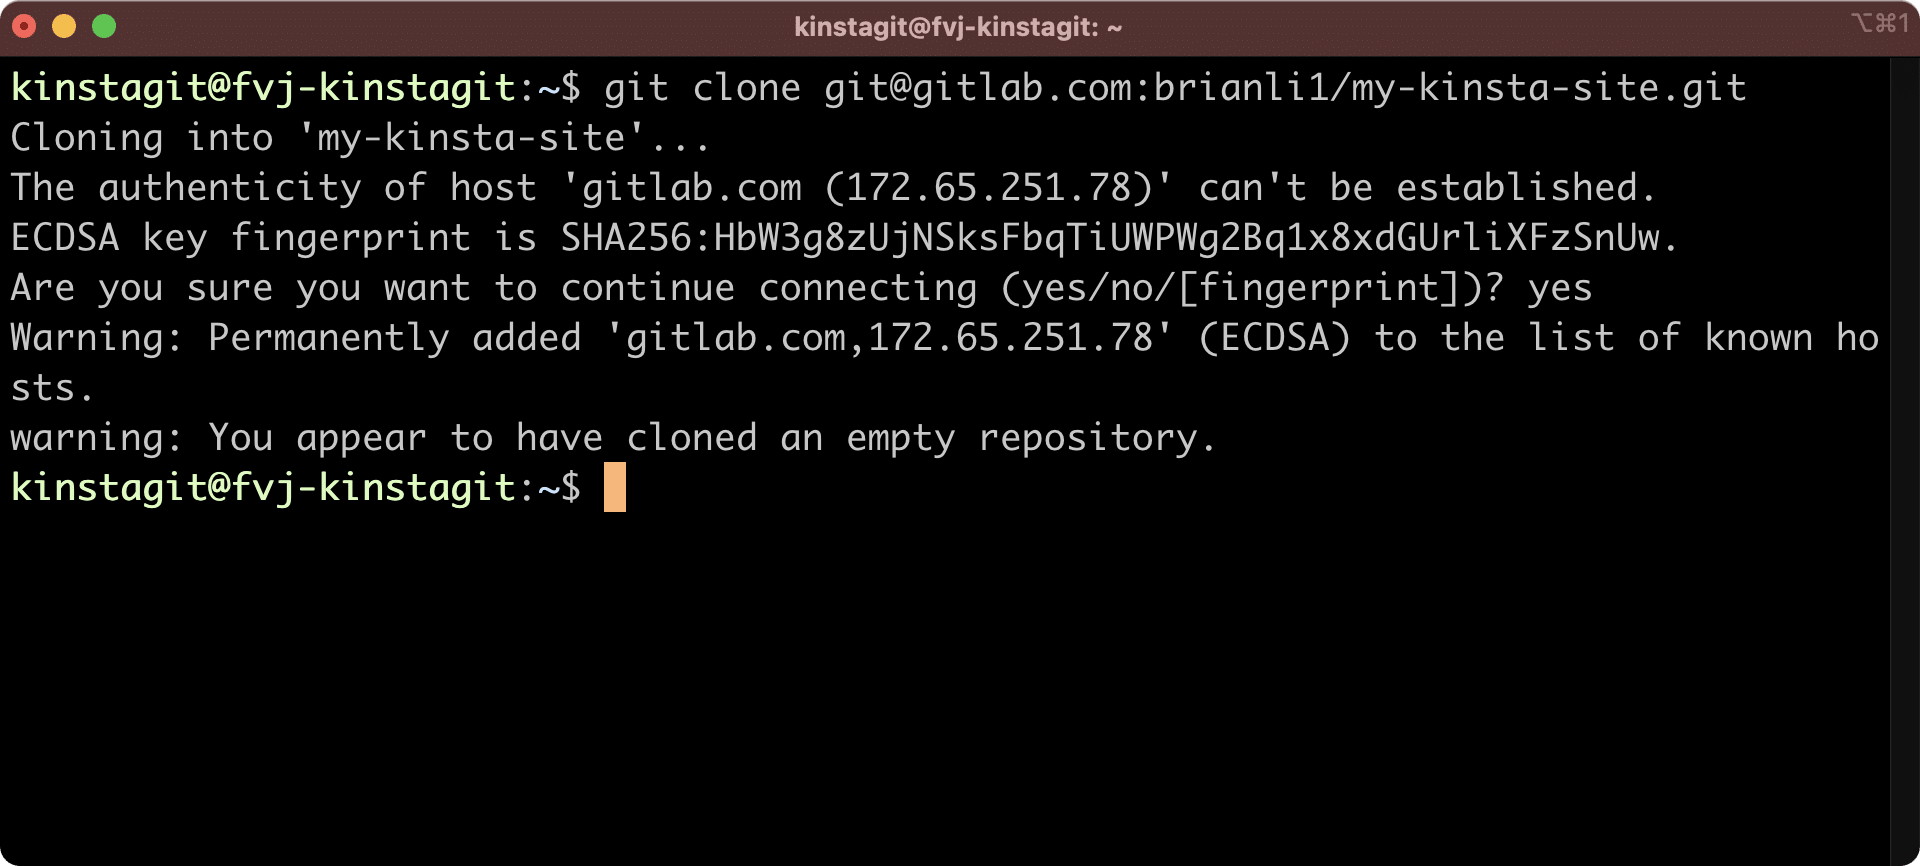 Klona ditt GitLab-arkiv till din Kinsta-livemiljö.